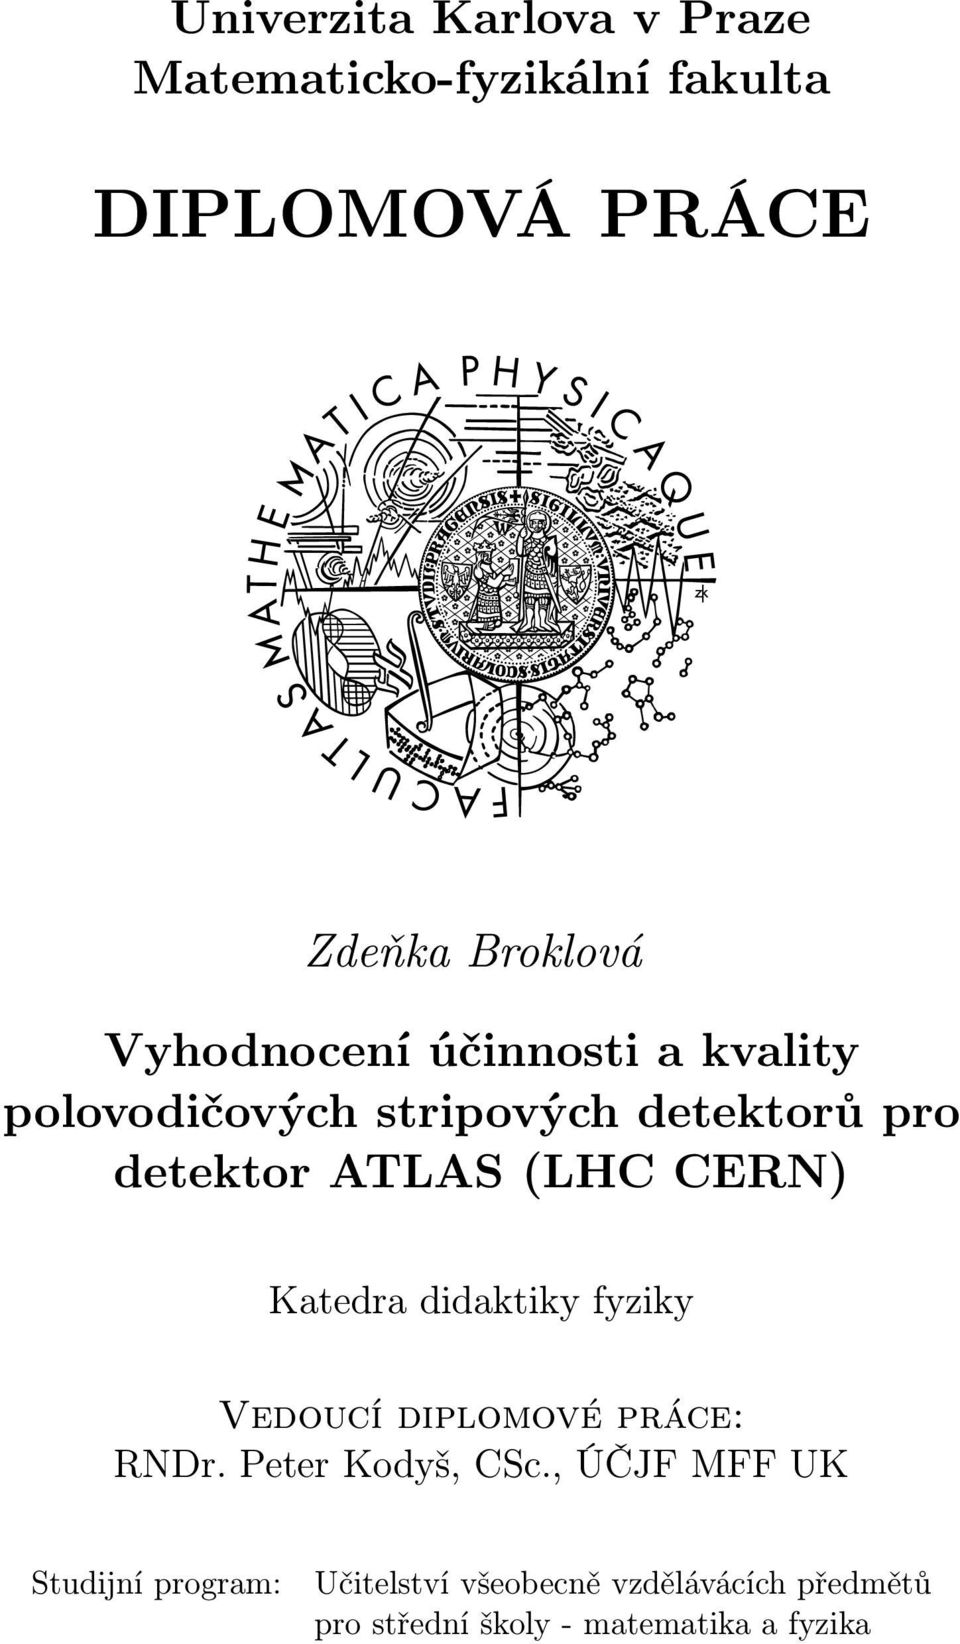 CERN) Katedra didaktiky fyziky Vedoucí diplomové práce: RNDr. Peter Kodyš, CSc.